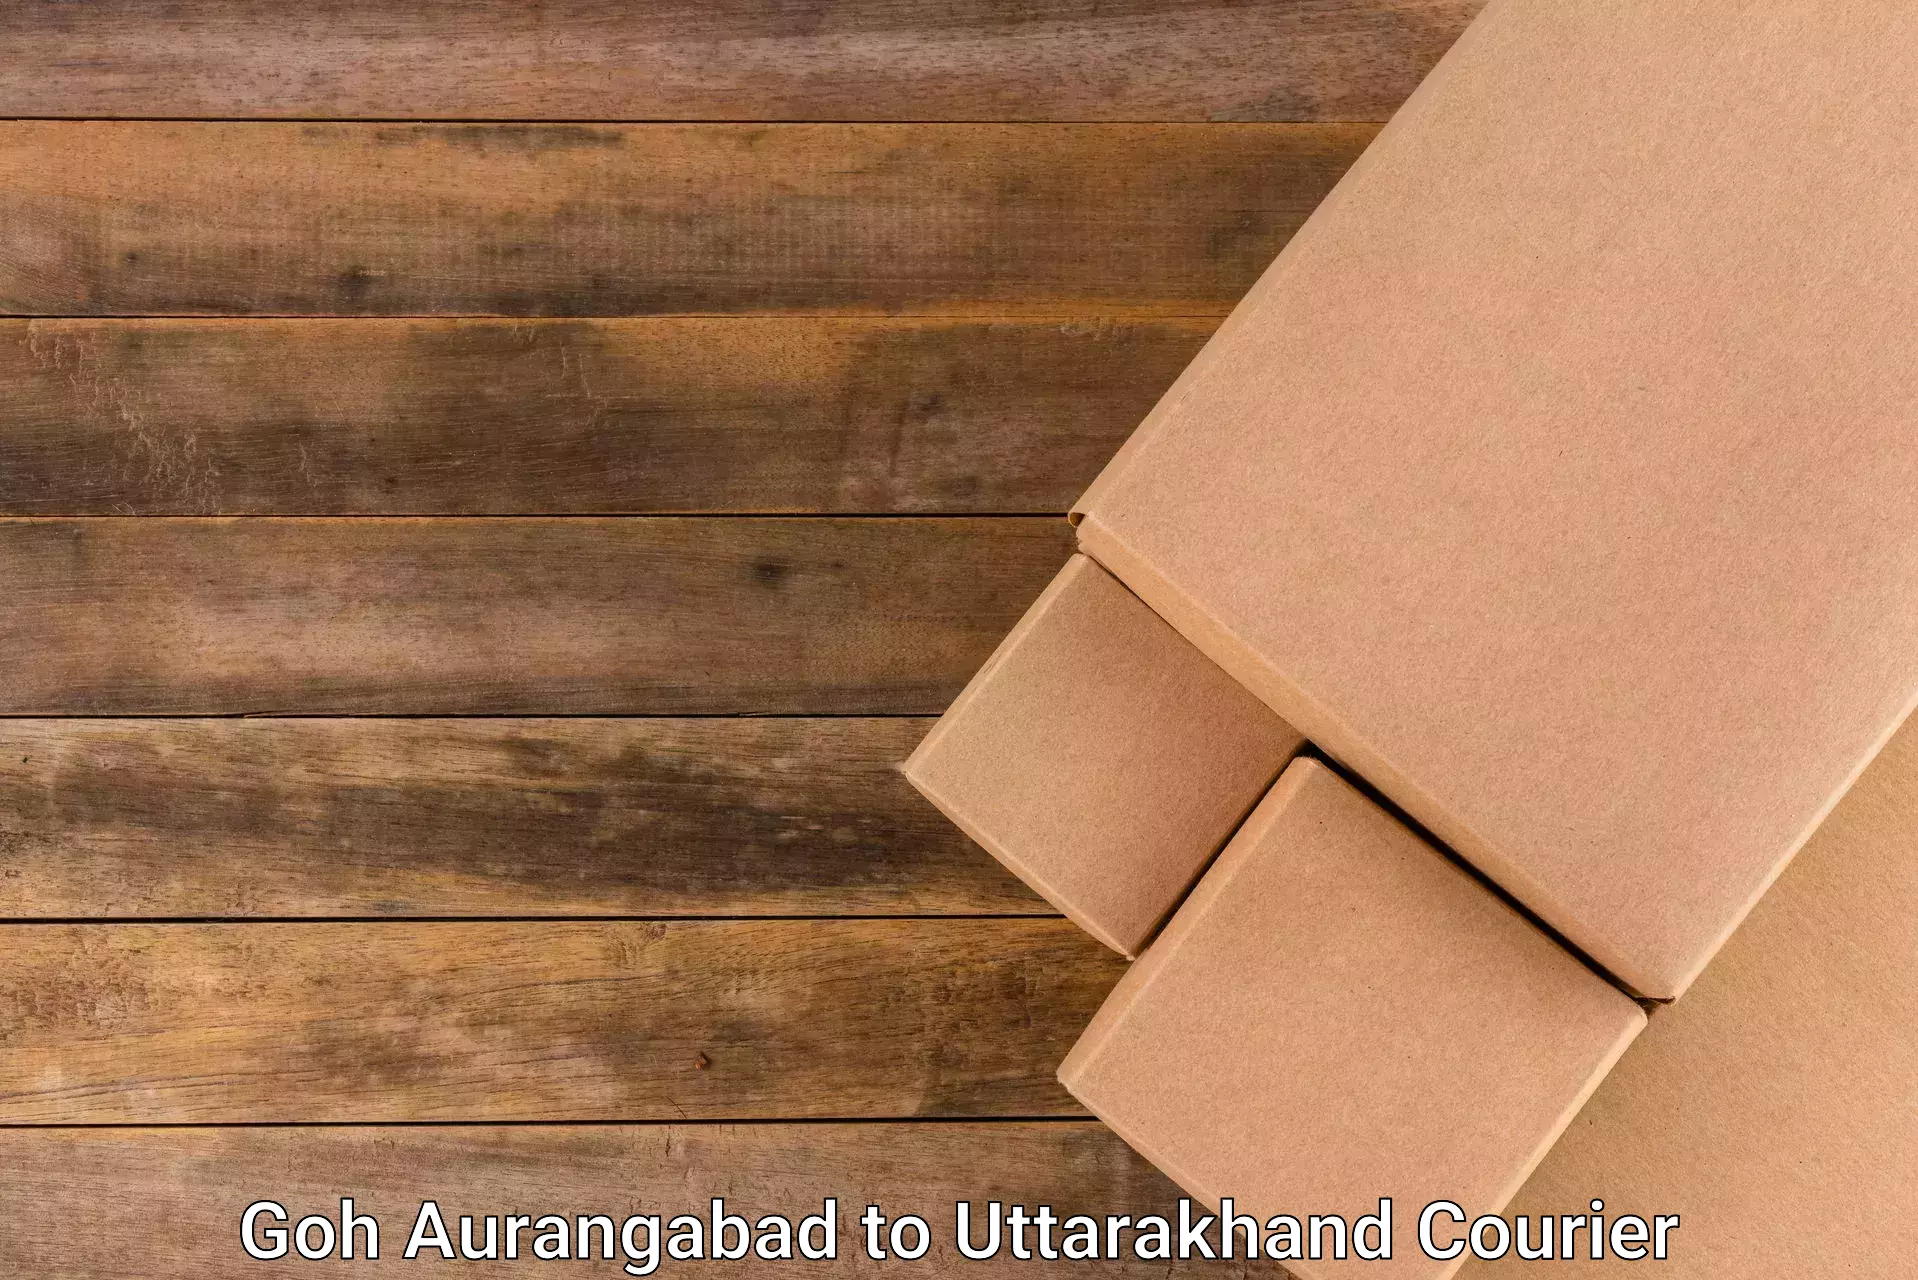 Professional courier services Goh Aurangabad to Uttarkashi